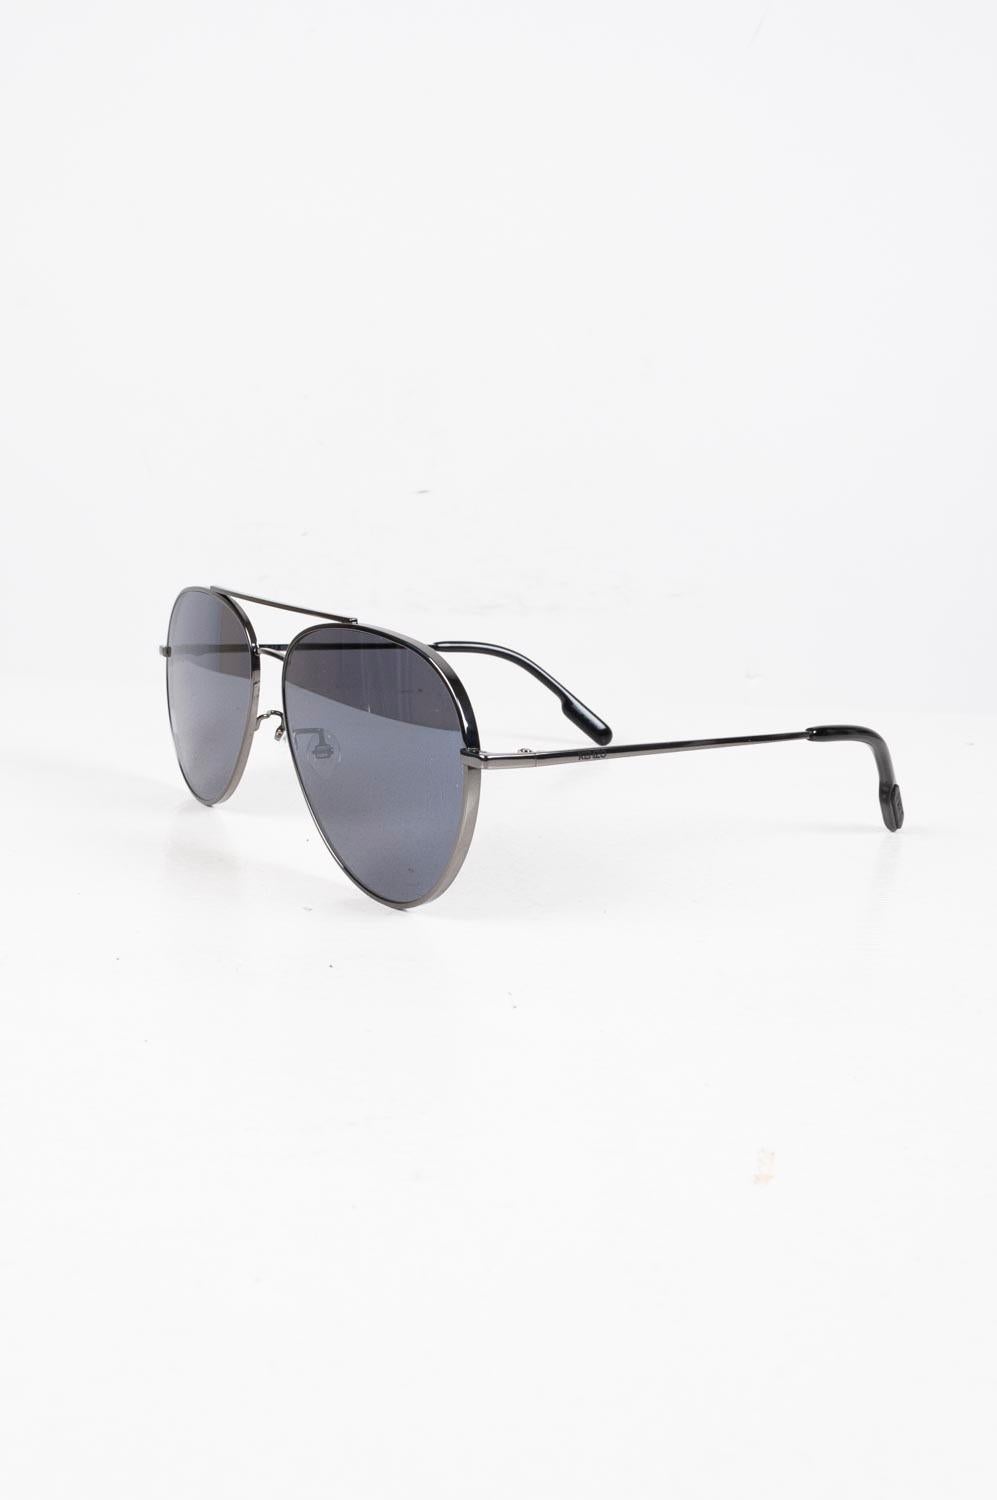 Zum Verkauf steht eine 100% echte Kenzo KZ40085F Herren Sonnenbrille, S324
Farbe: Grau
(Eine tatsächliche Farbe kann ein wenig variieren aufgrund individueller Computer-Bildschirm Interpretation)
MATERIAL: Glas/Metall
Tag Größe: Einheitsgröße
Diese